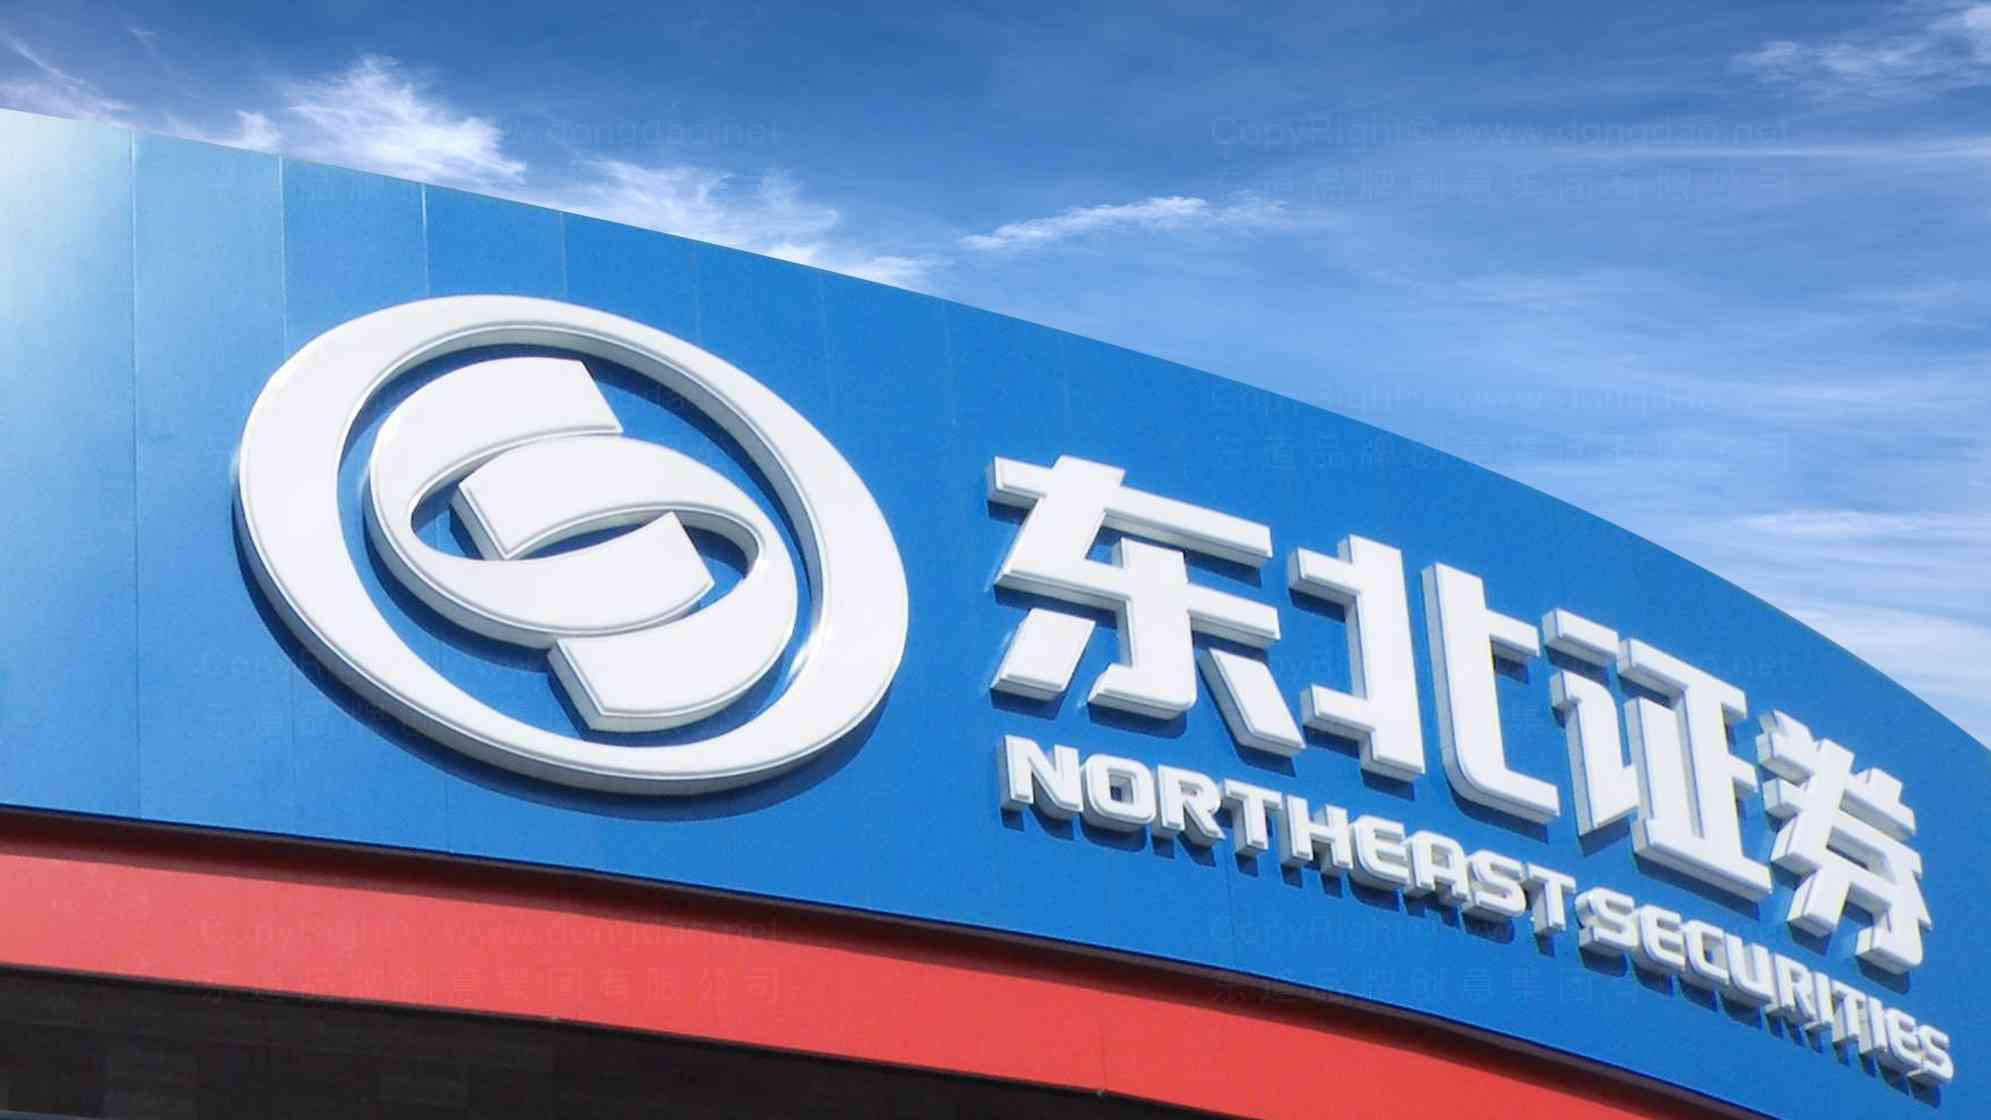 东北证券logo设计图片素材